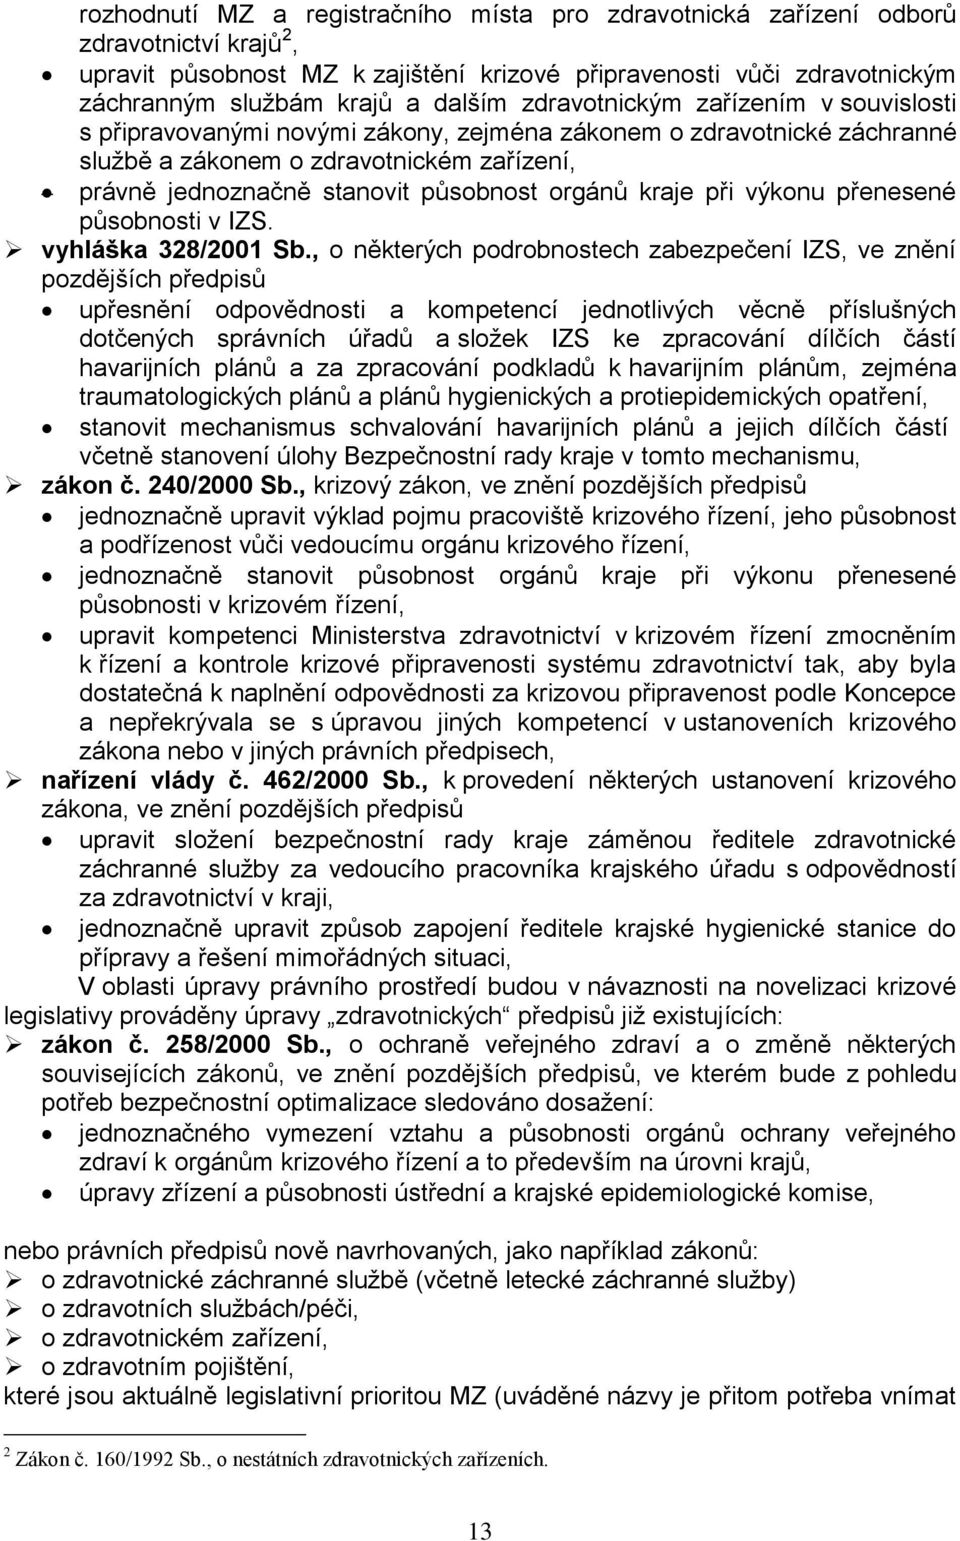 kraje při výkonu přenesené působnosti v IZS. vyhláška 328/2001 Sb.